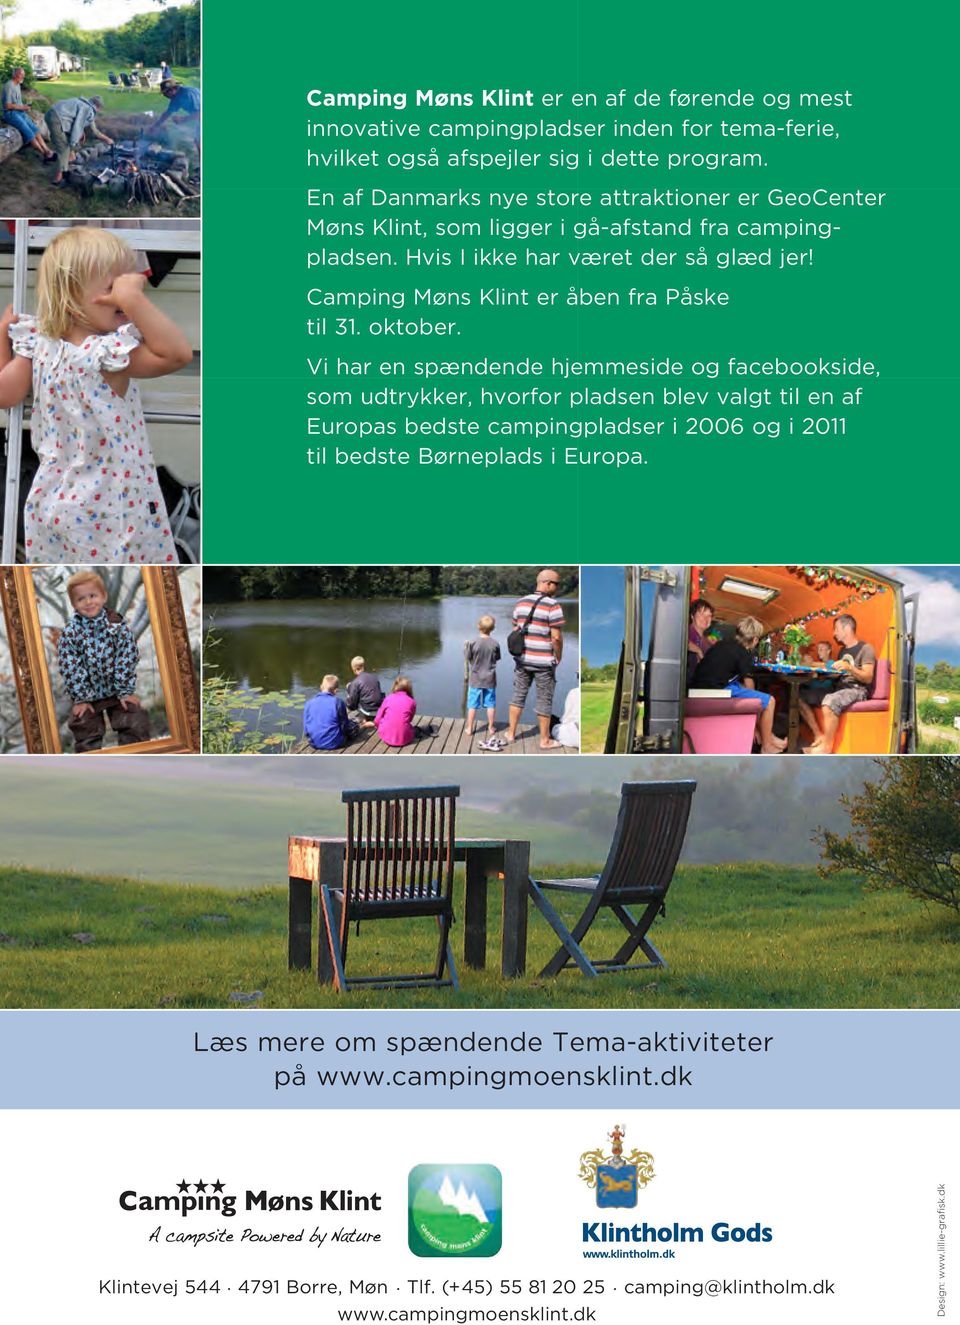 Camping Møns Klint er åben fra Påske til 31. oktober.